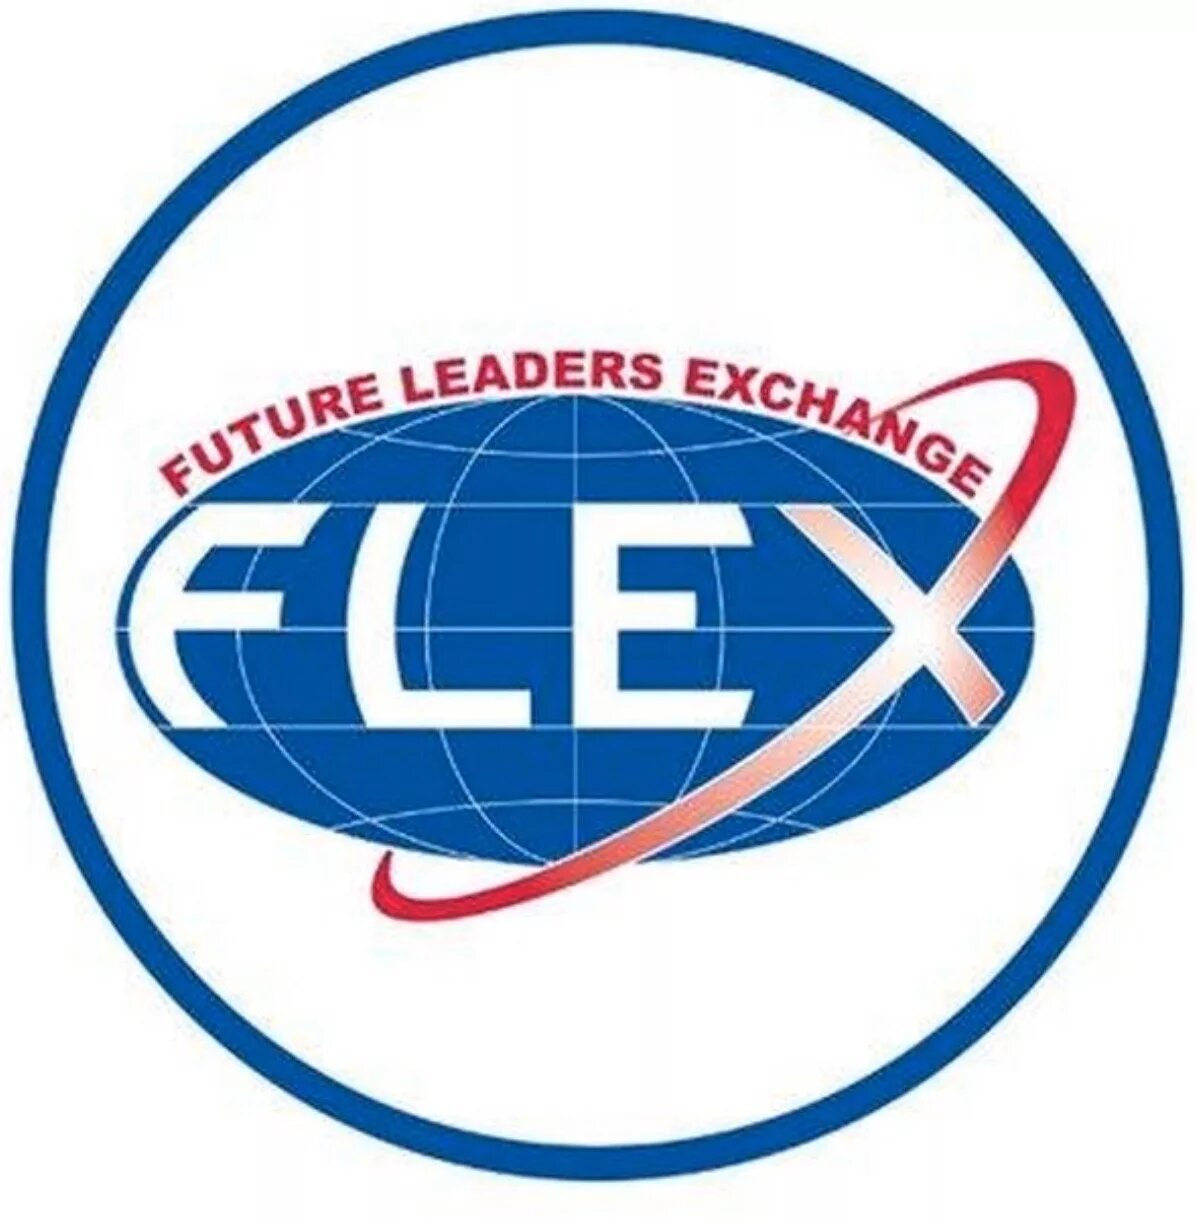 Приложение флекс. Flex программа. Flex логотип. Flex программа обмена. Flex Future leaders Exchange.